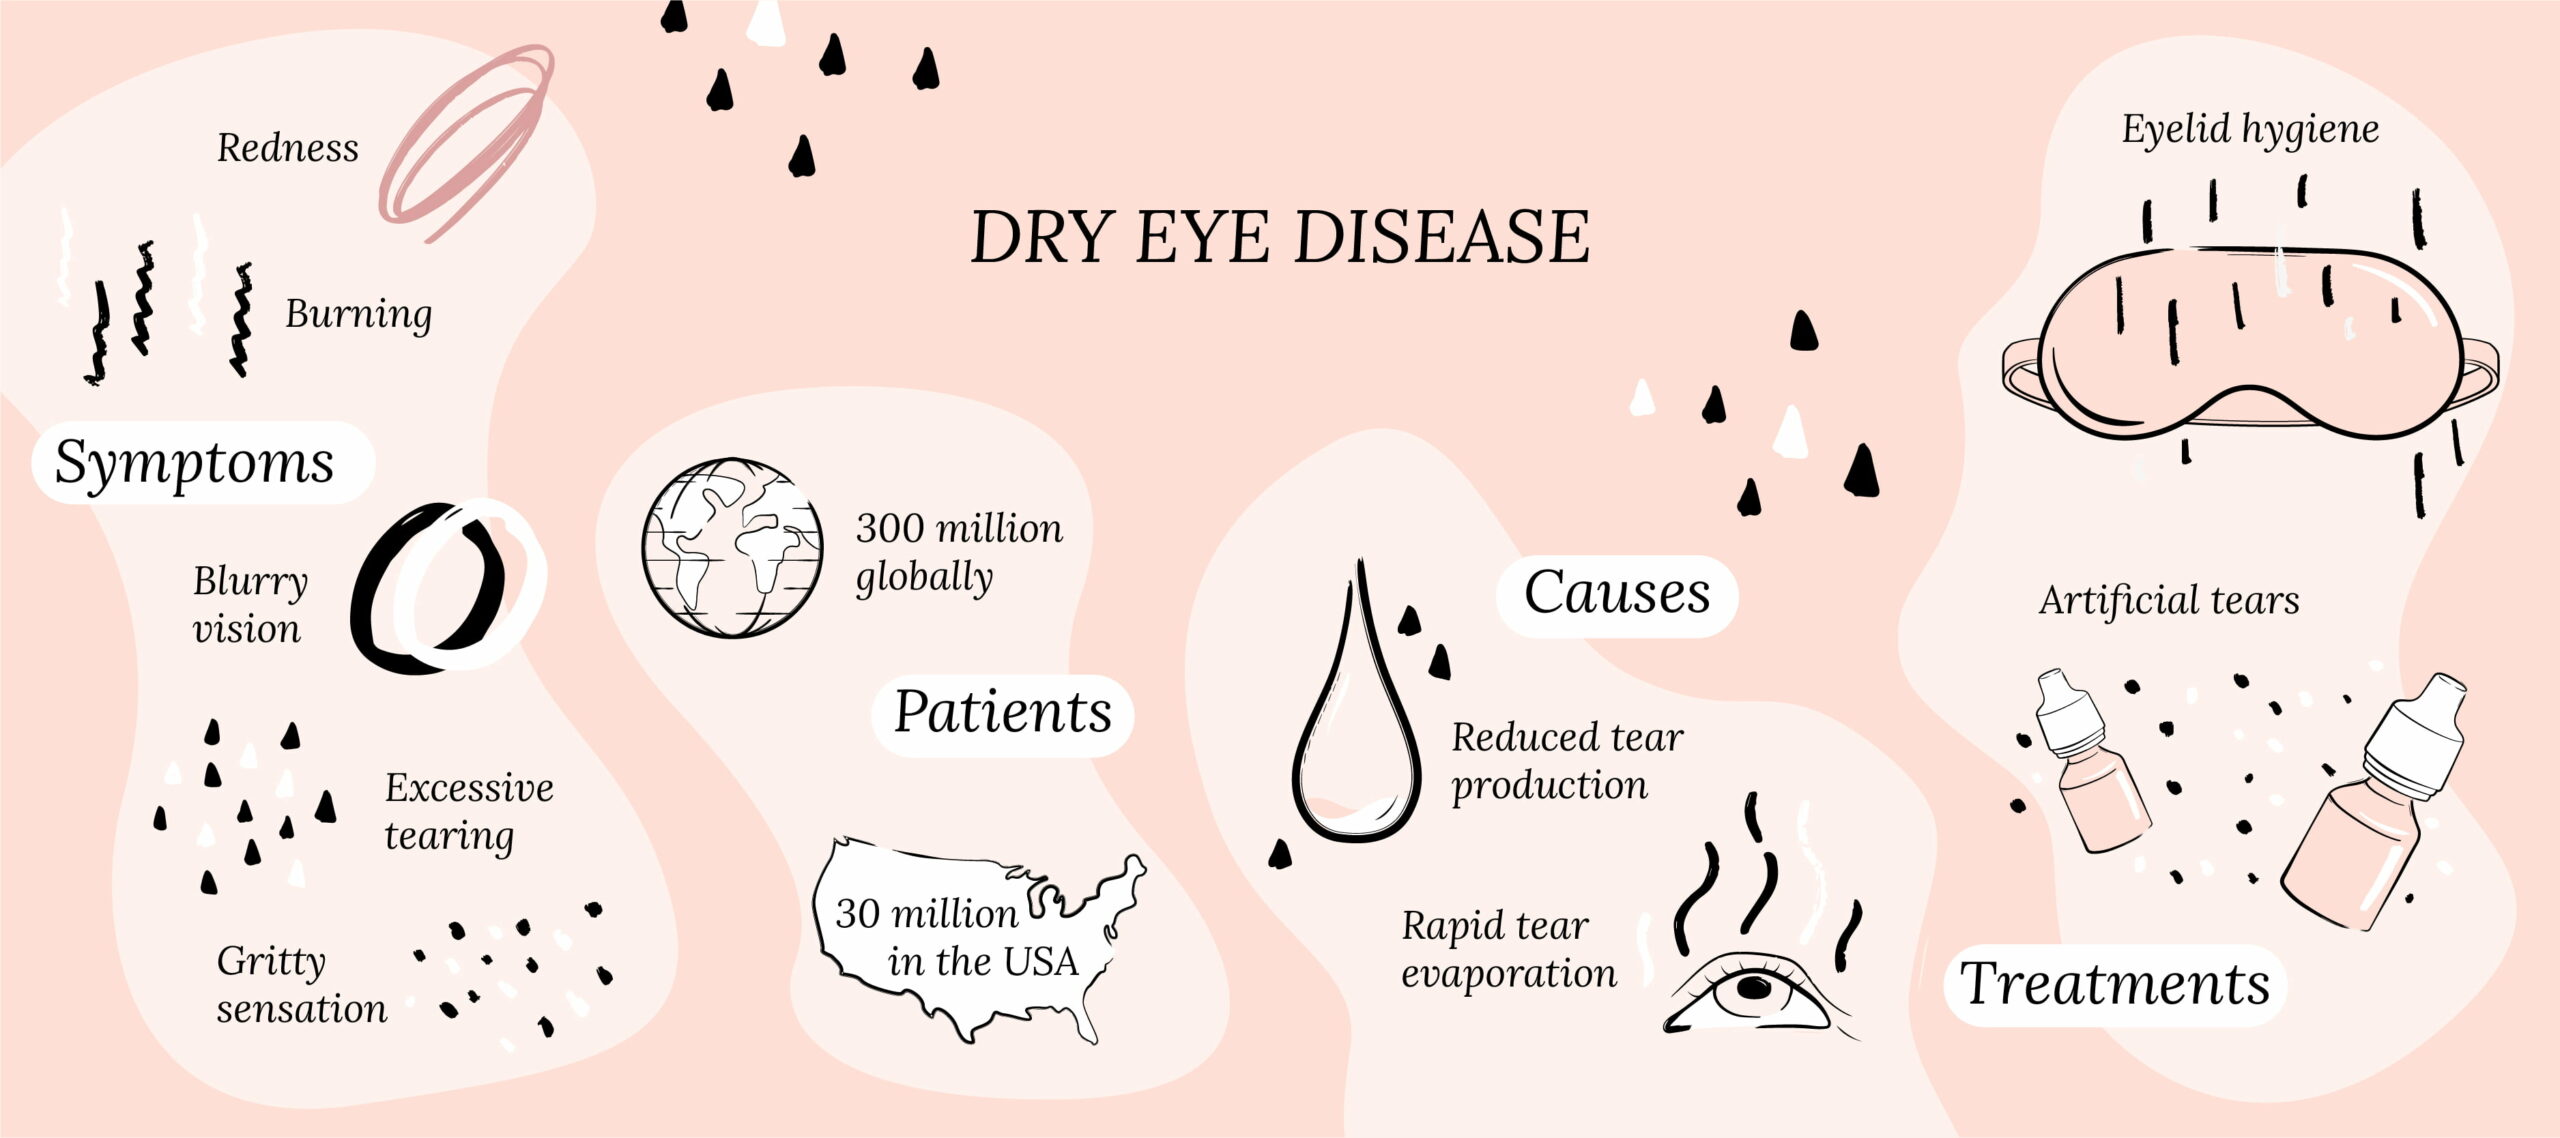 What is dry eye disease